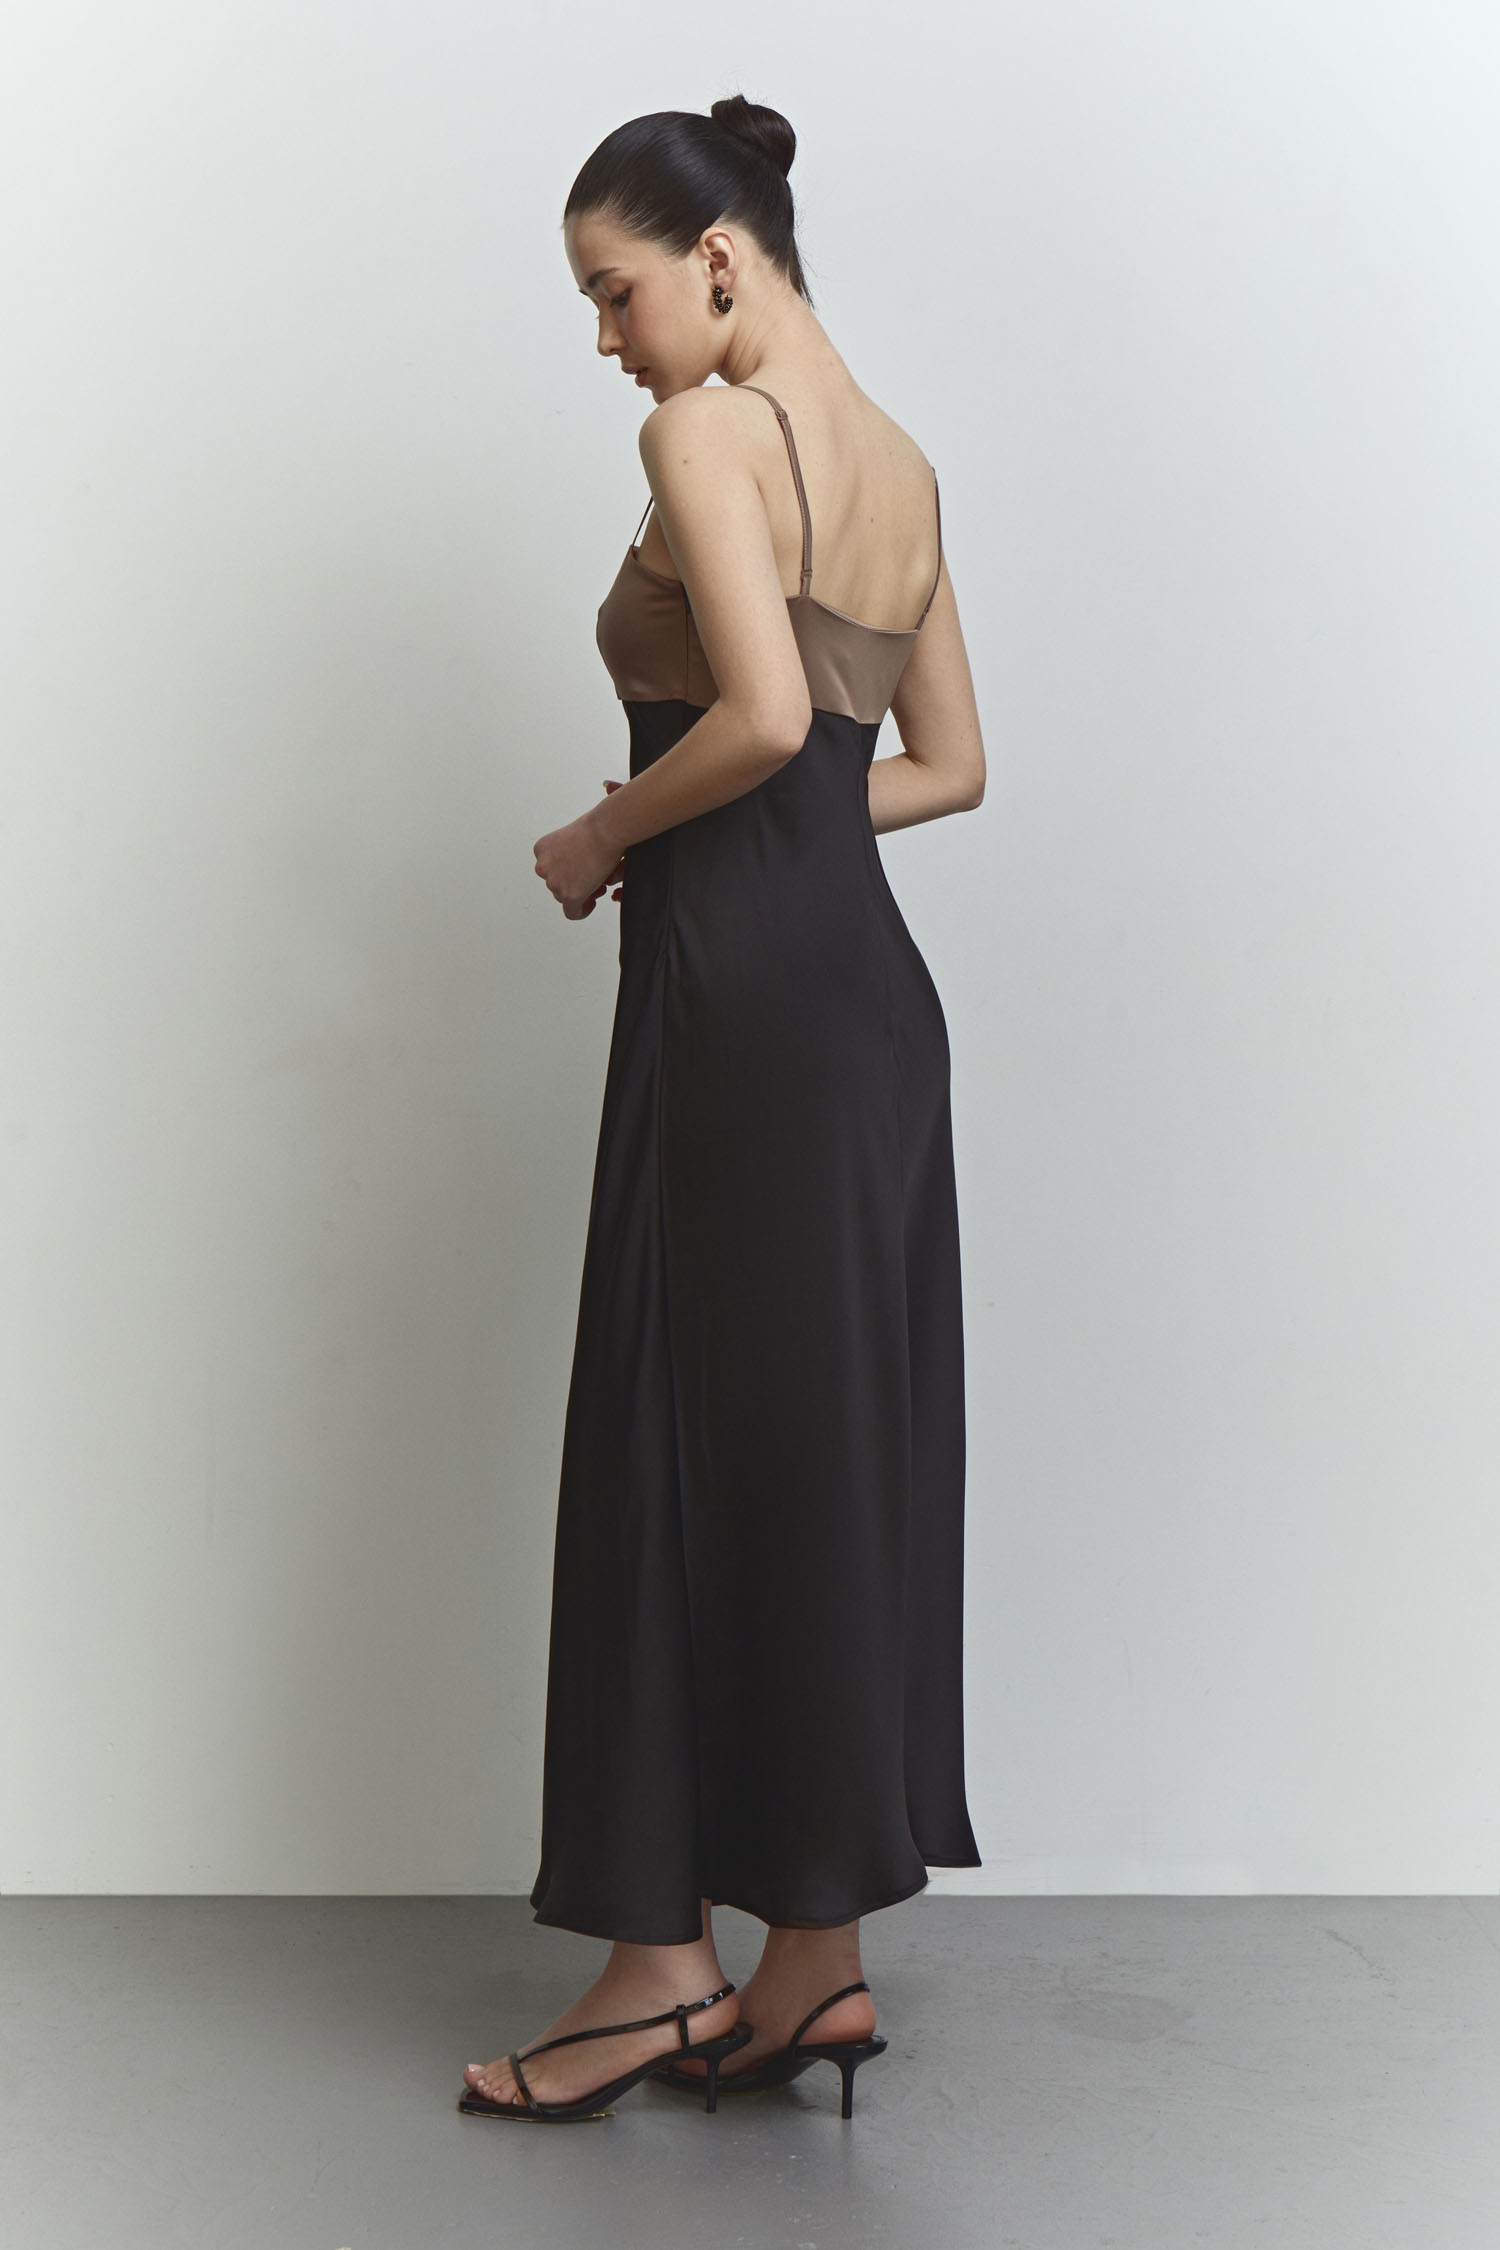 Сукня комбінована чорна з шоколадним верхом - THE LACE фото 149605